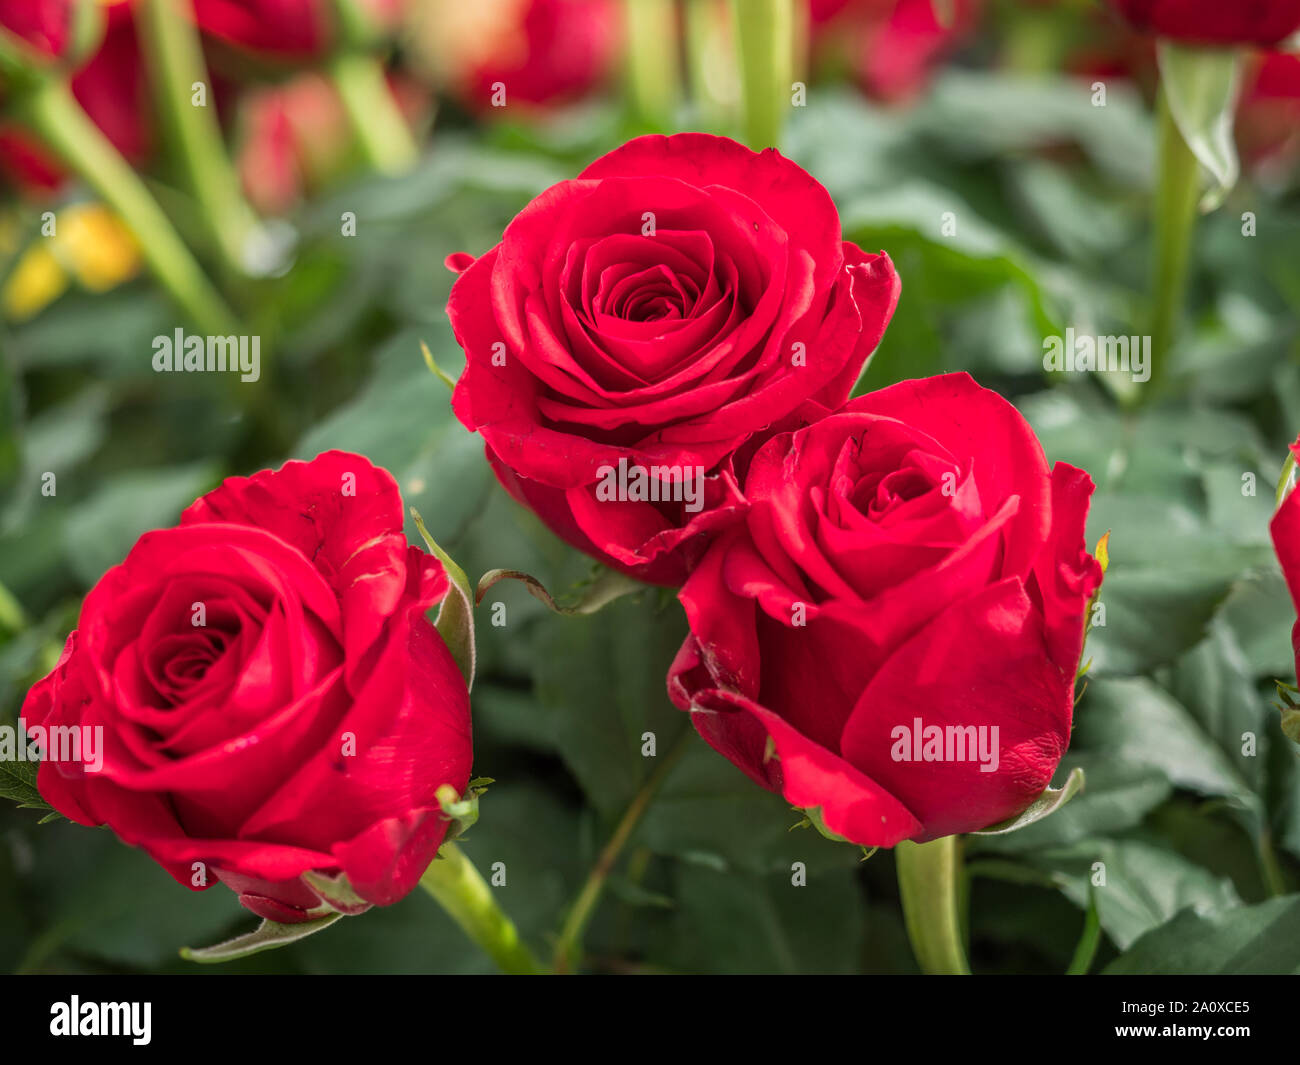 Romantique en fleurs rose rouge frais. Fleur rose 'Red Eagle' sur l'arrière-plan vert et roses ohers Banque D'Images